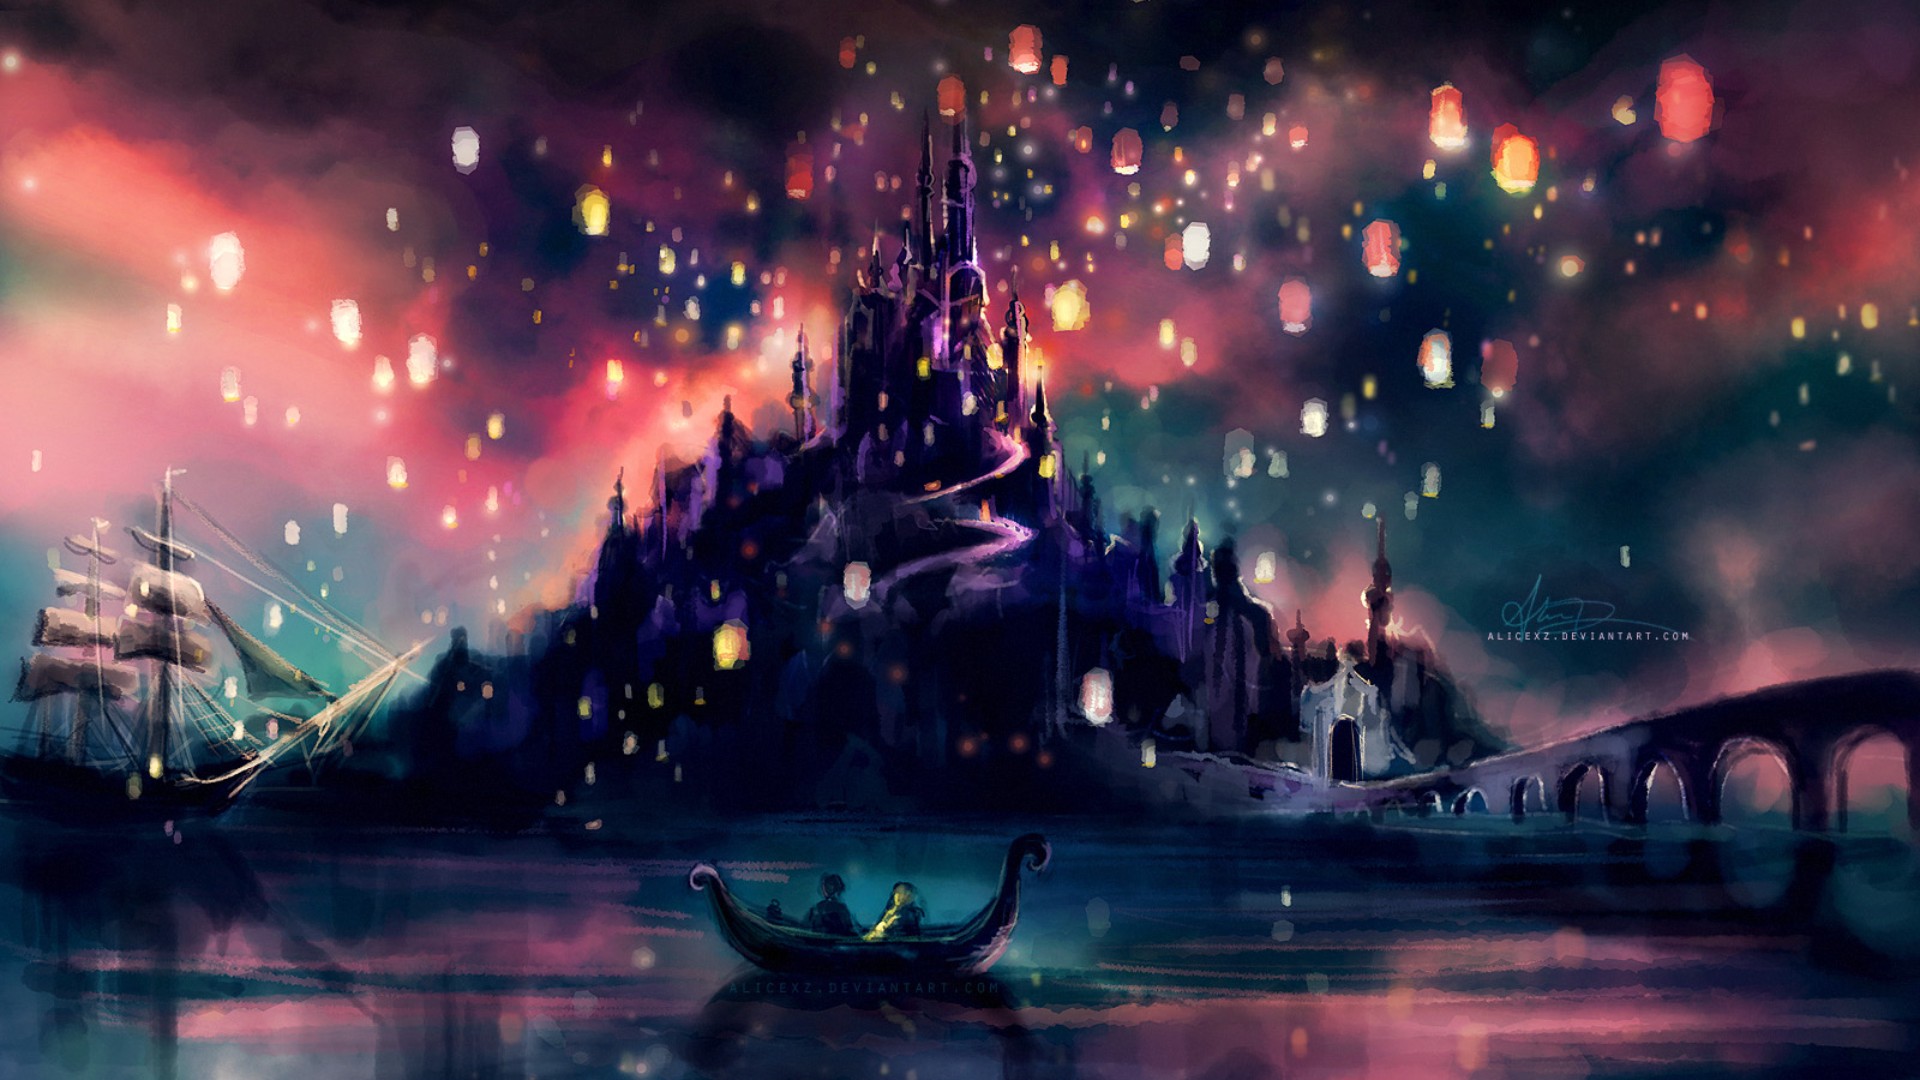 Disney Wallpapers - Top 34 Best Disney